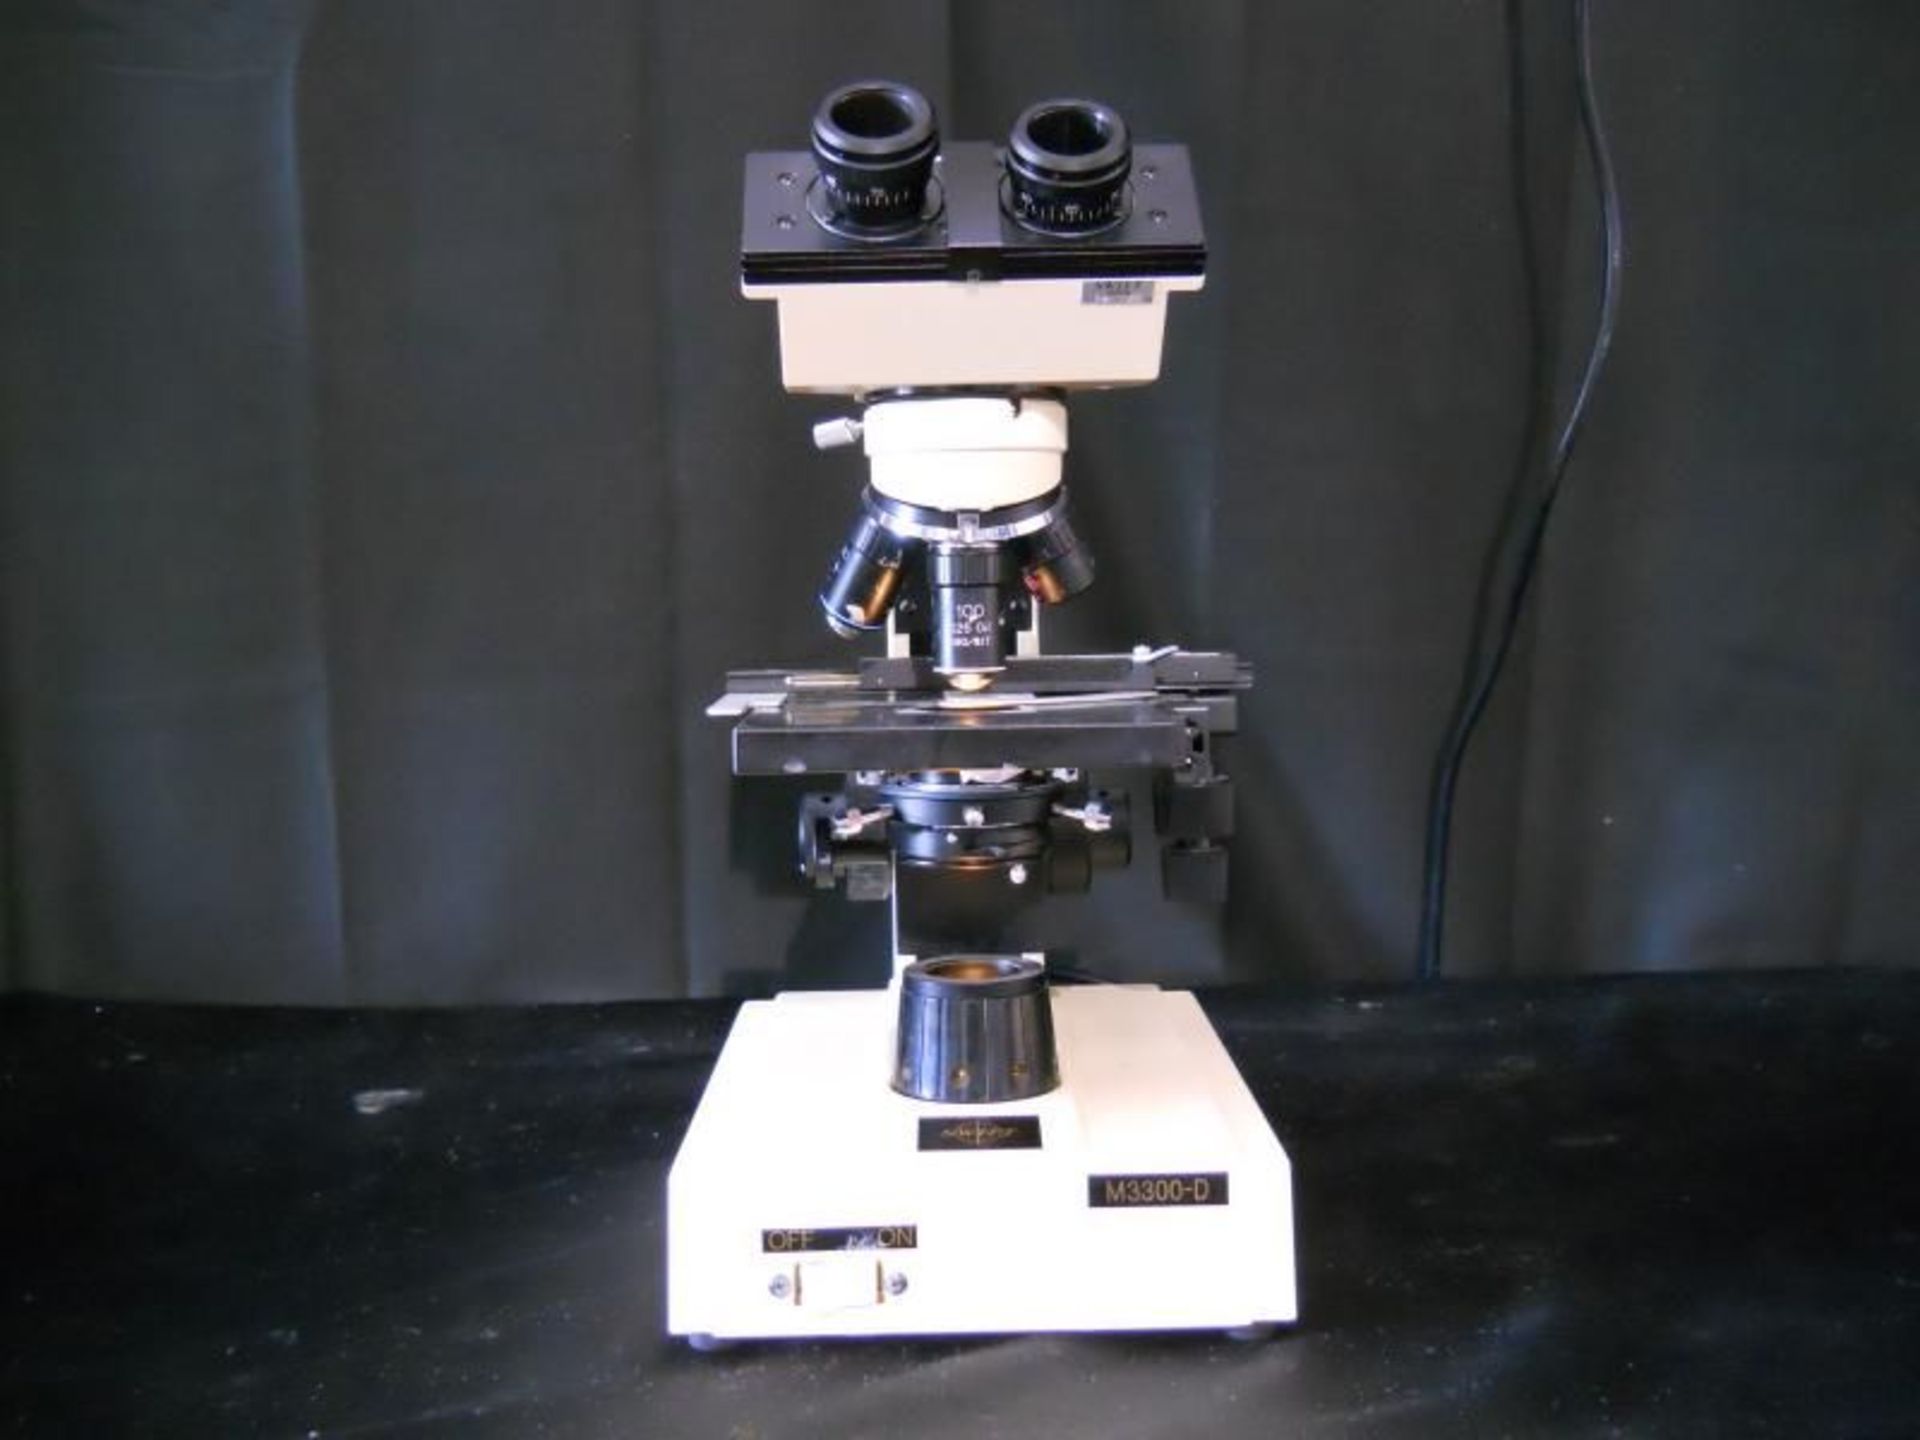 Swift Microscope M3300-D w/ Objectives (4x 10x 40x 100x M3300D) oculars NOT incl, Qty 1,